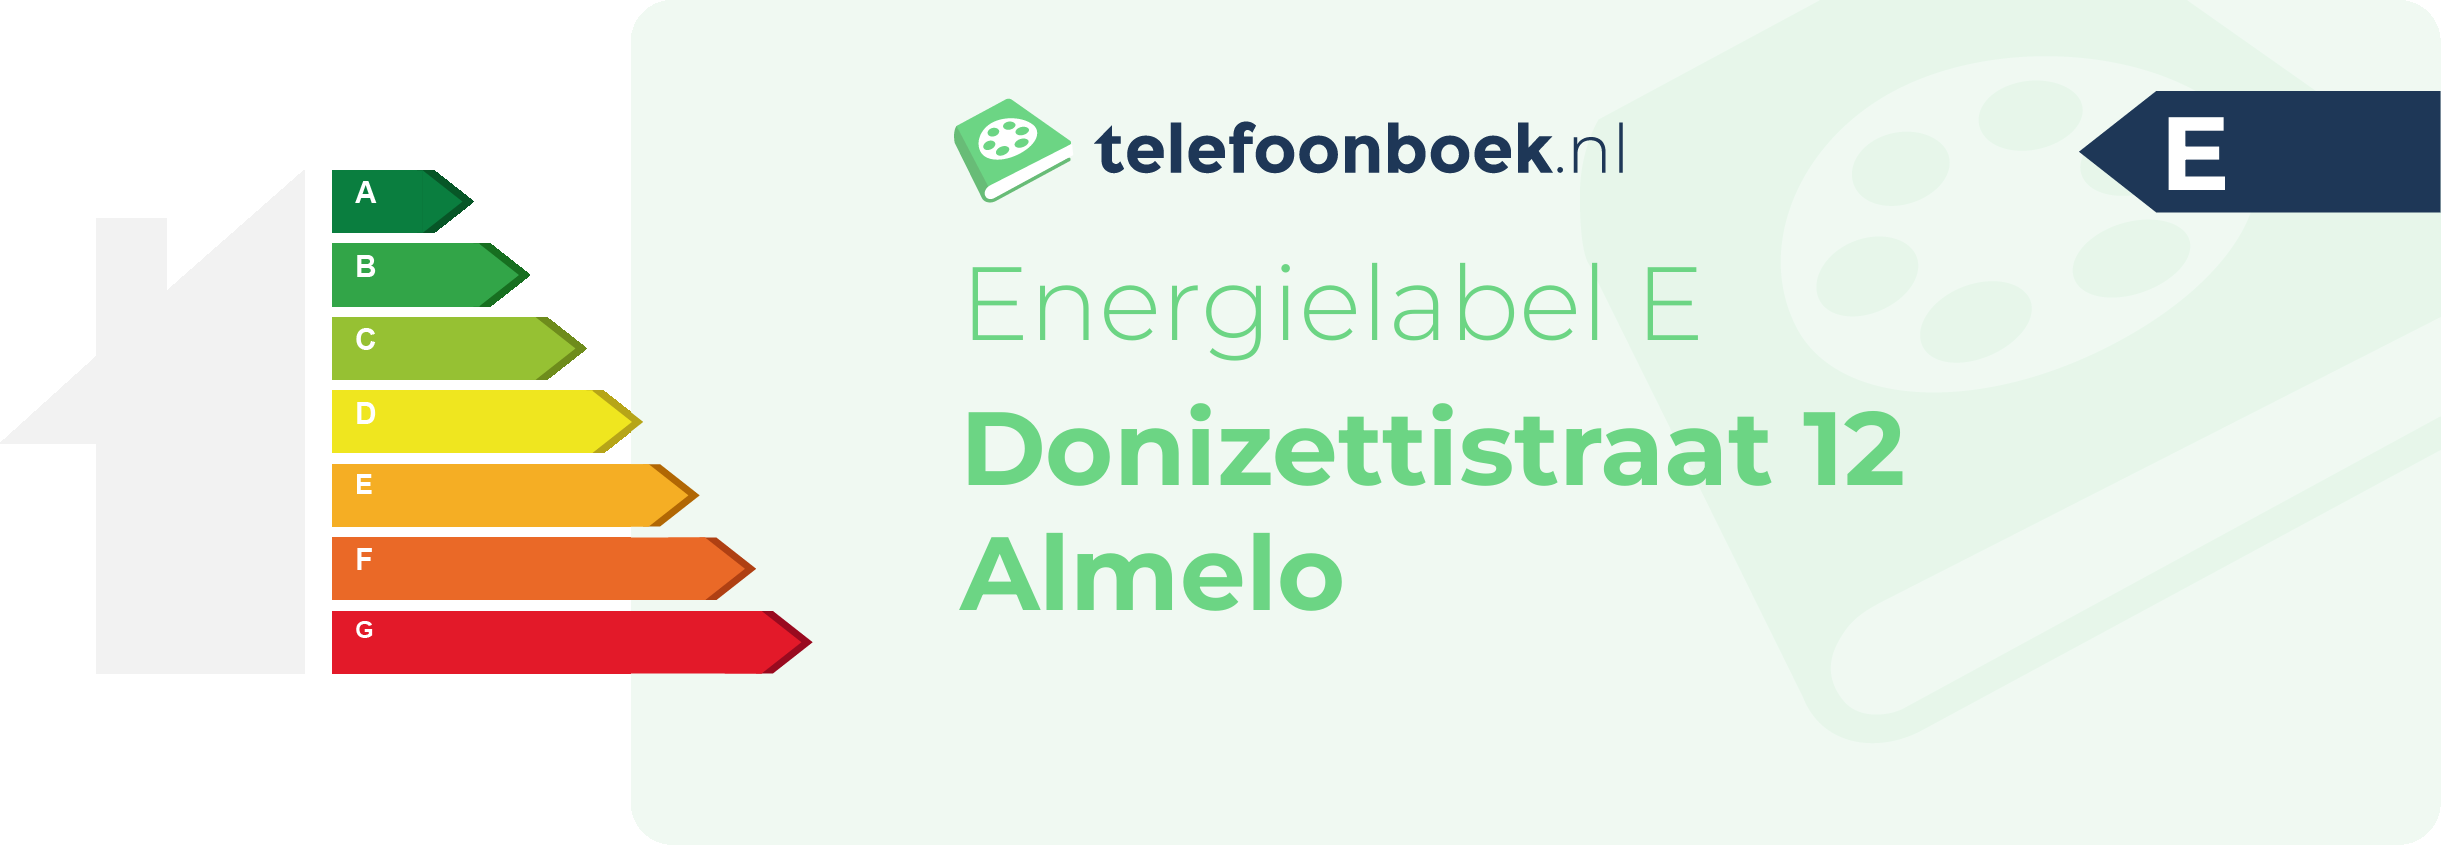 Energielabel Donizettistraat 12 Almelo